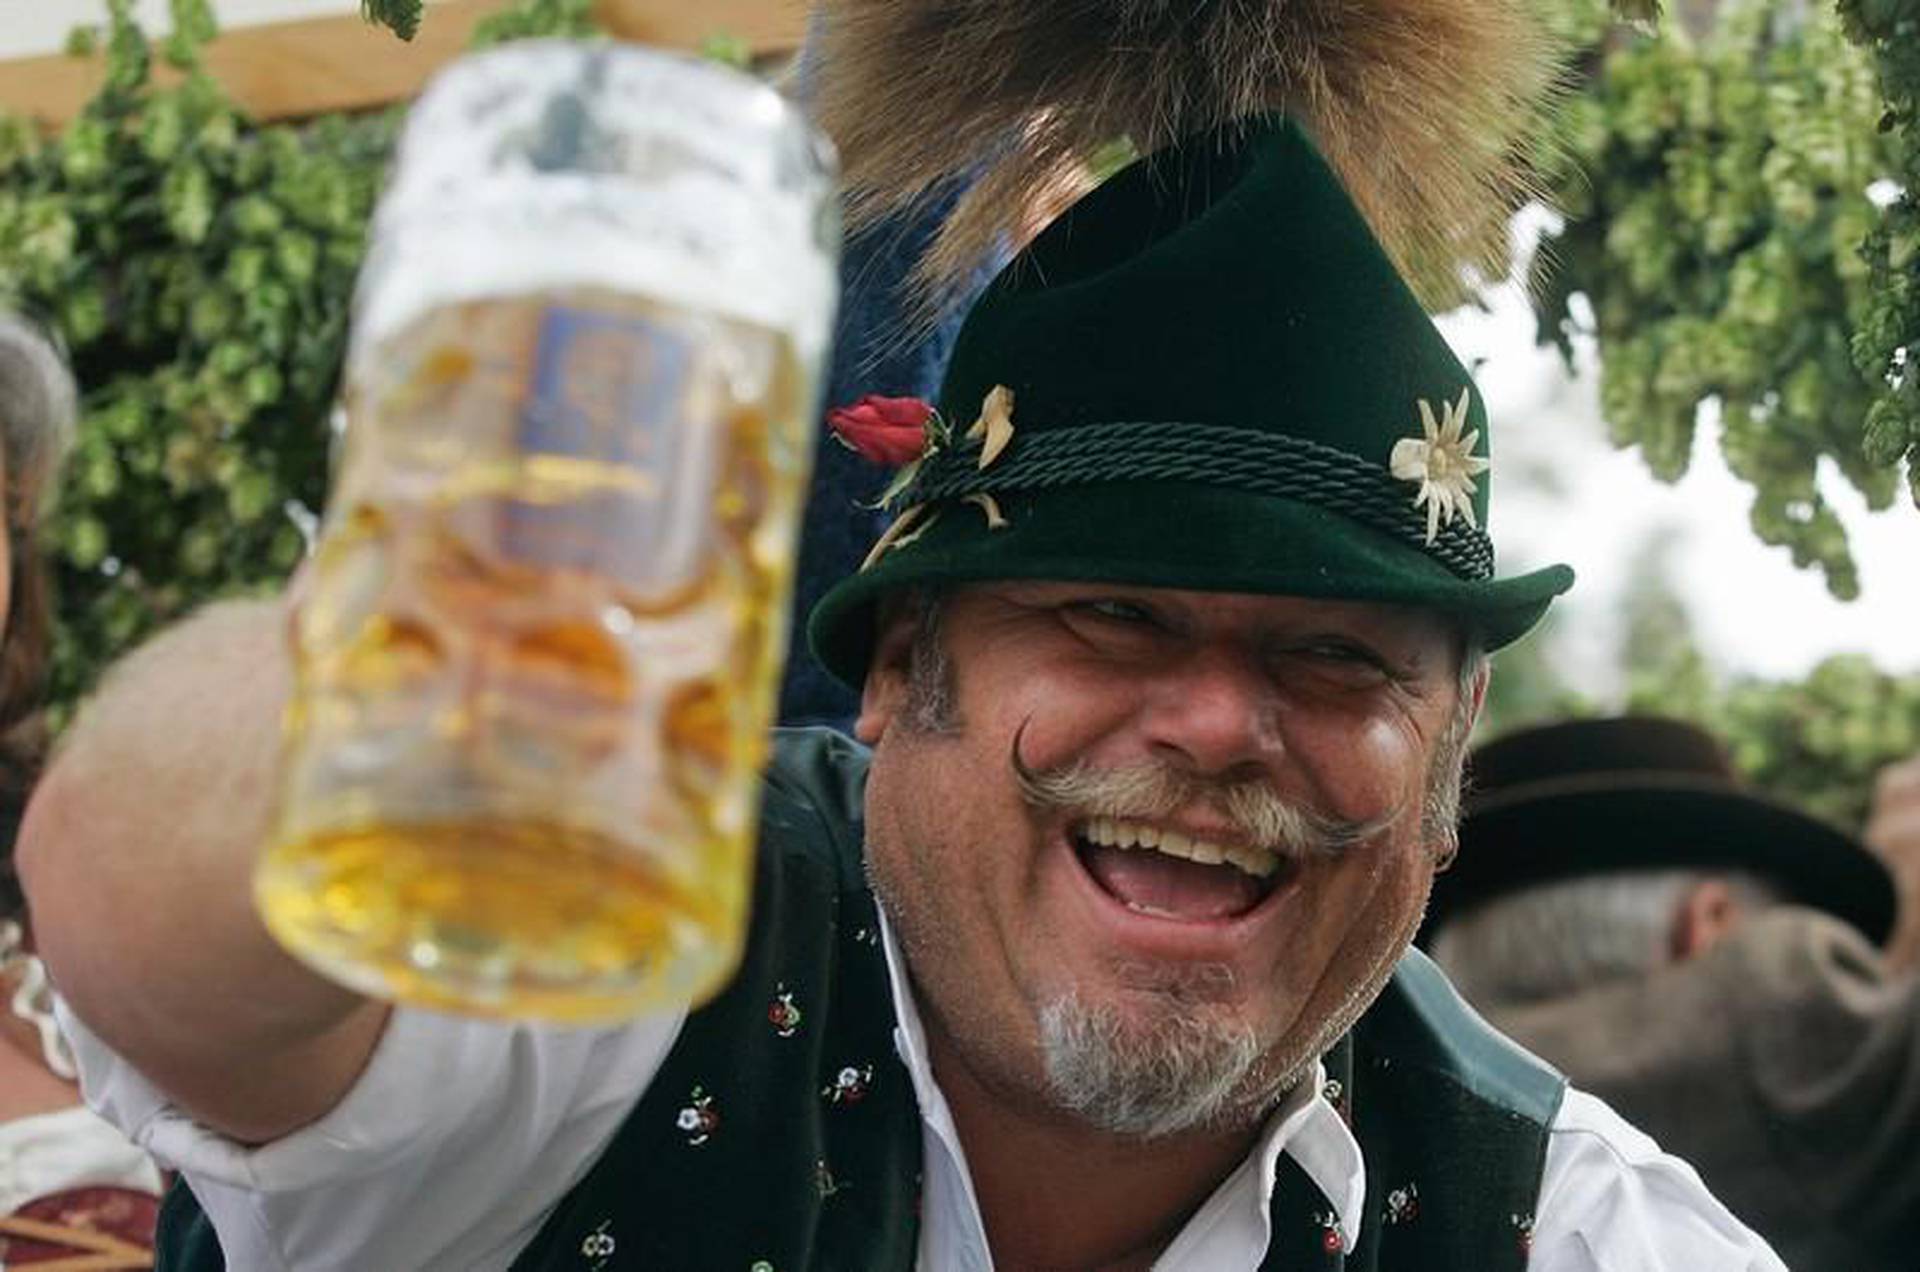 Пивной мужик. Бюргер немец. Немцы пьют пиво. Немецкий мужчина с пивом.